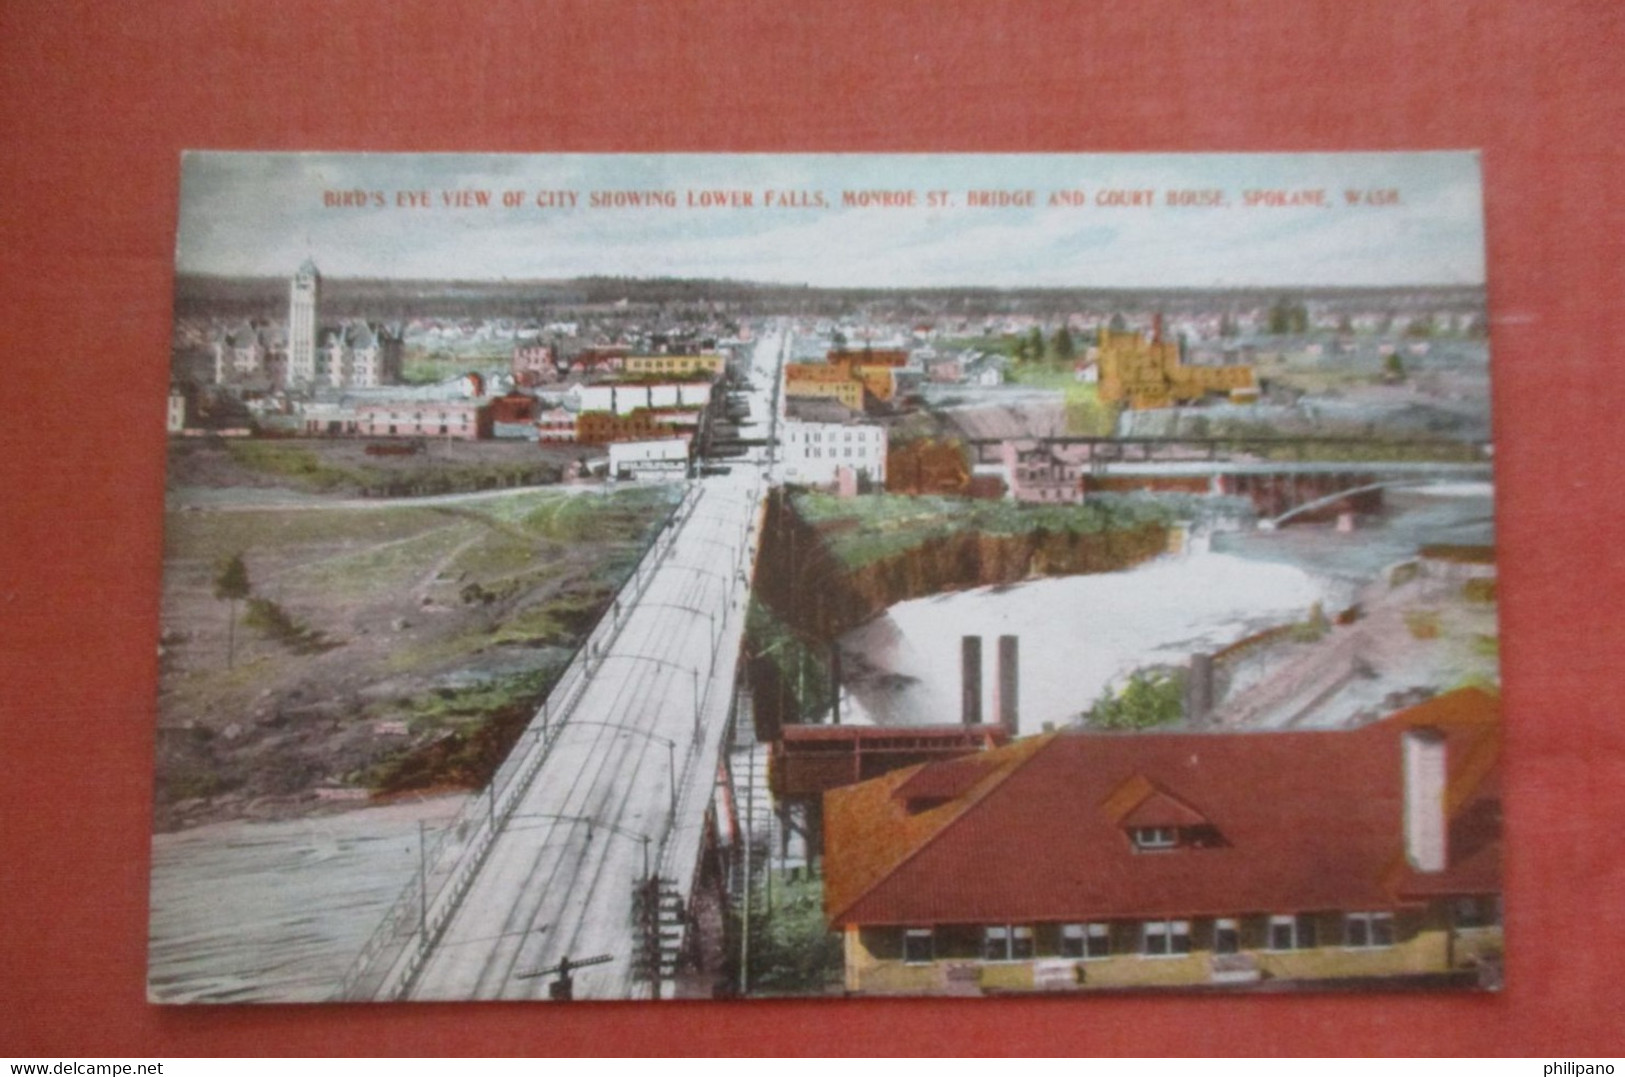 Lower Falls Monroe Street Bridge Spokane  Washington > Spokane >       Ref 4801 - Spokane